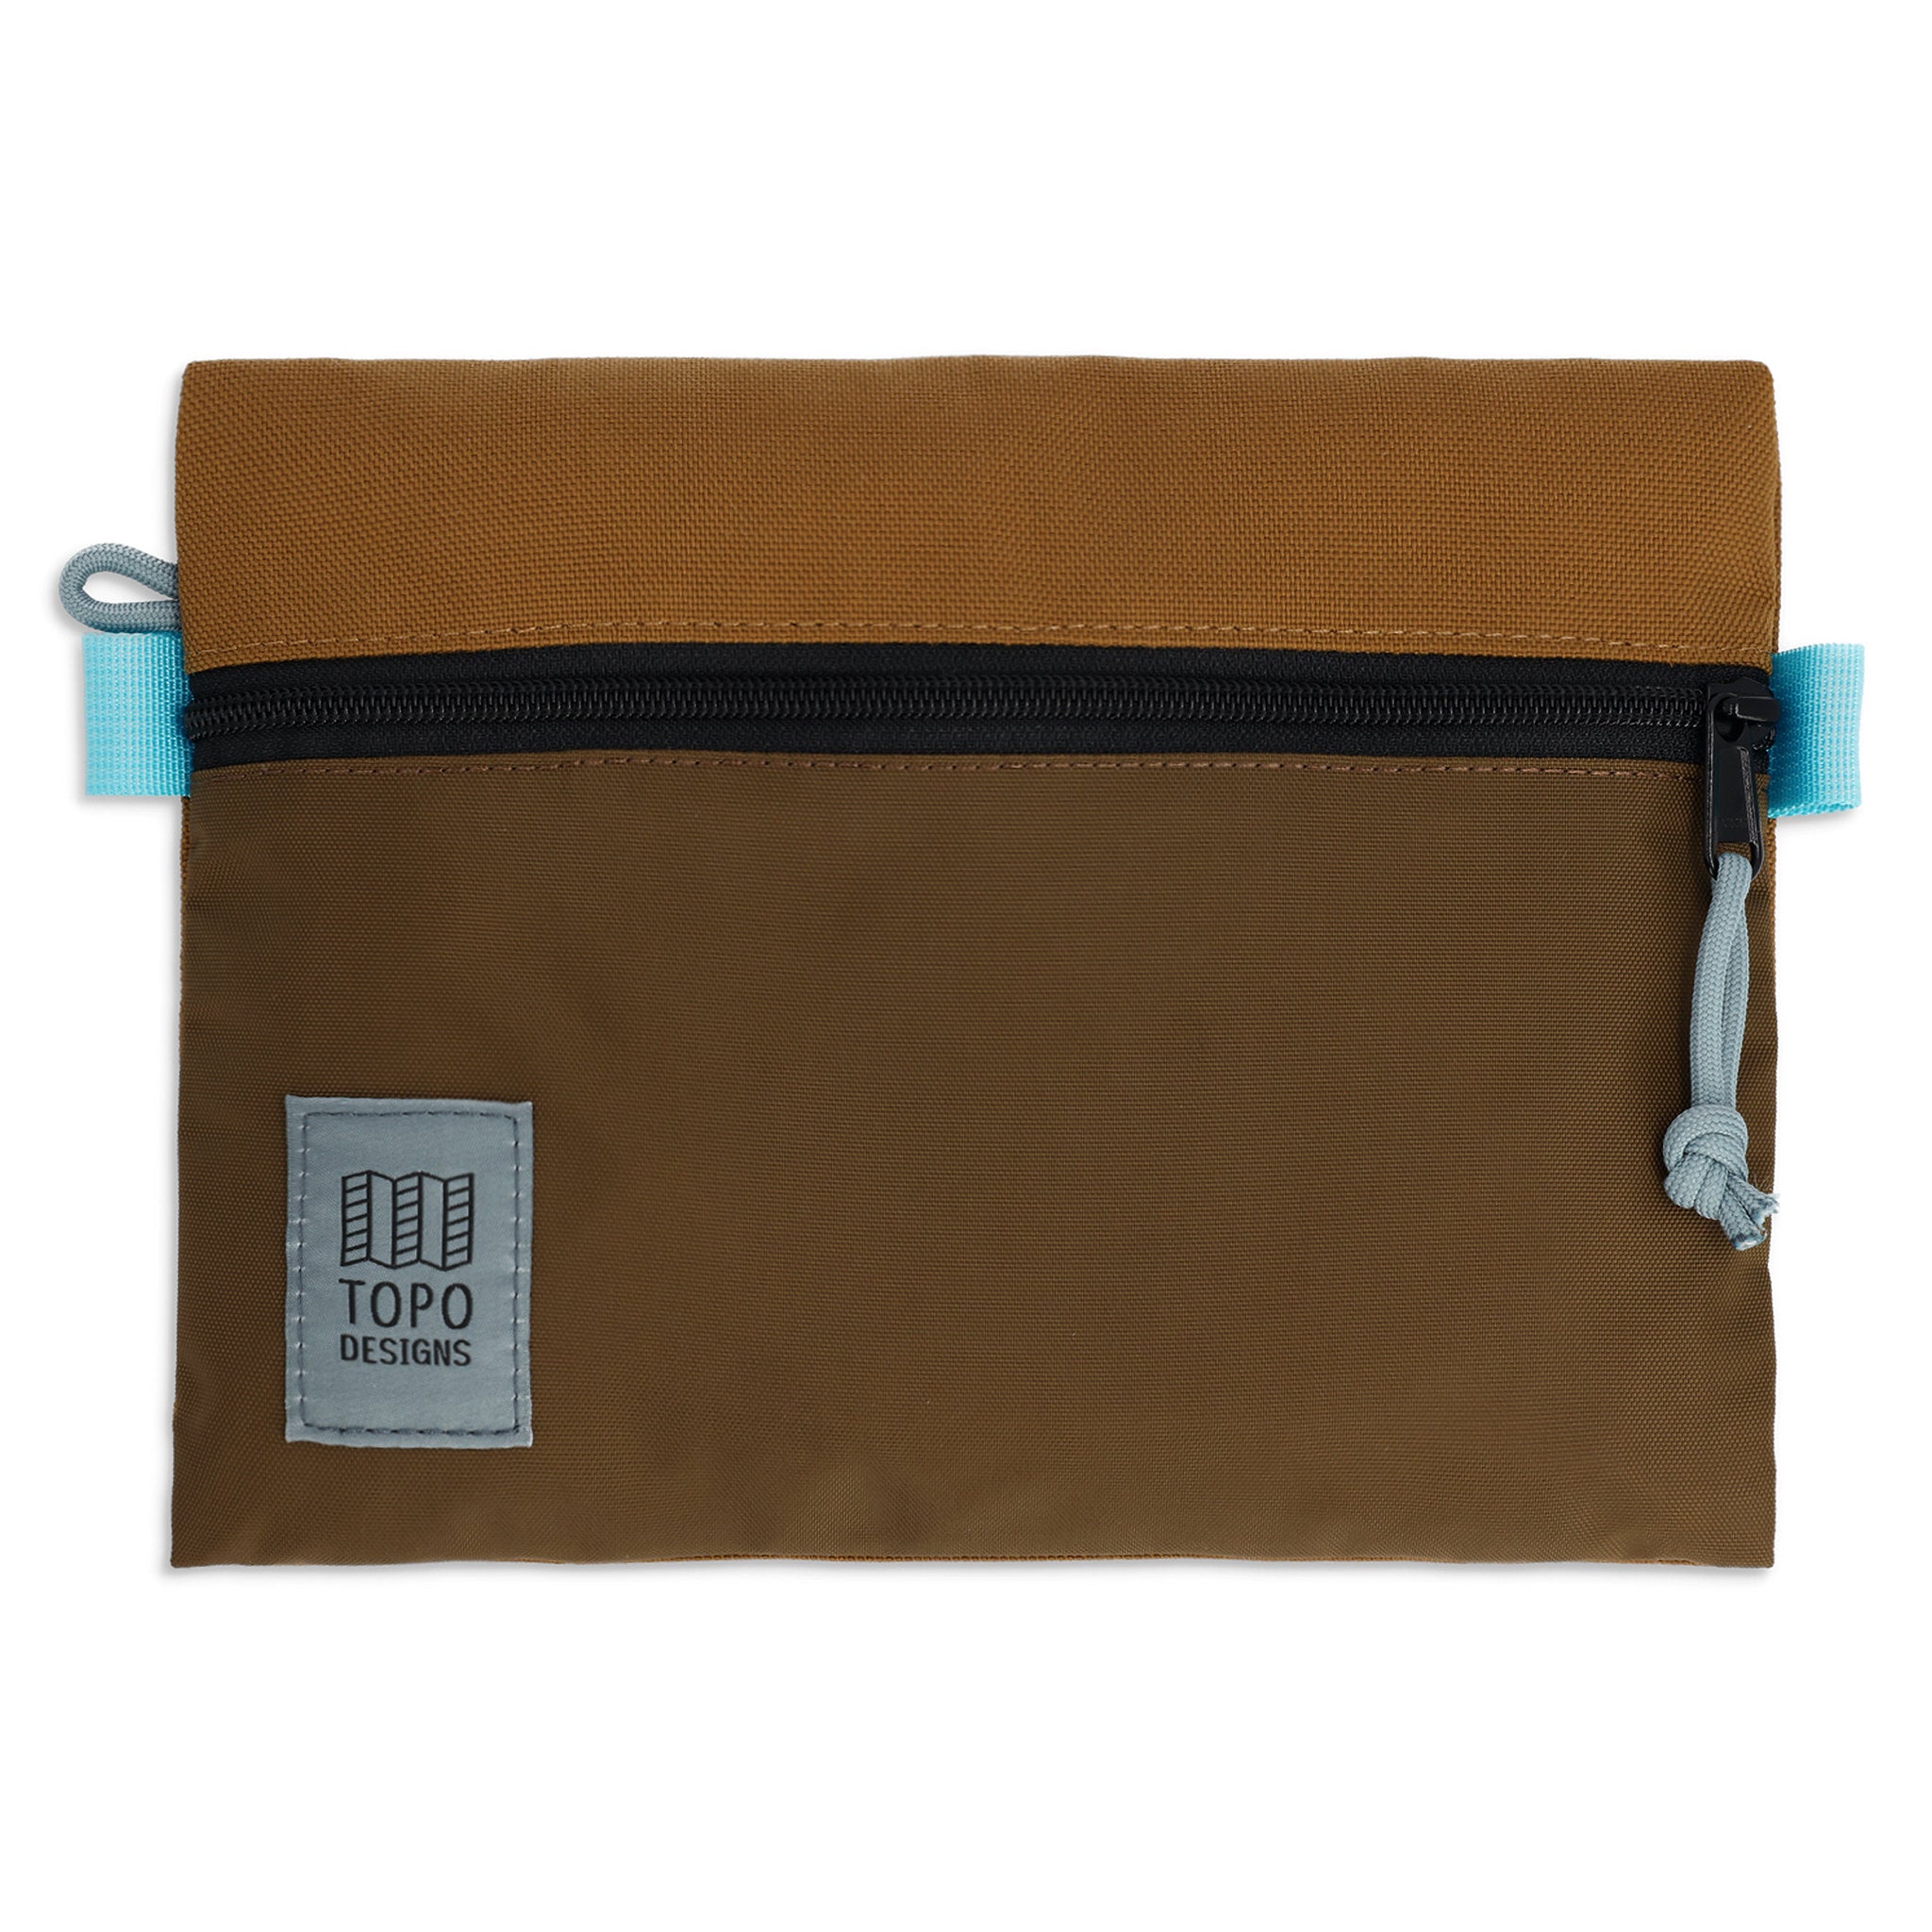 Accessory Bag Medium Topo Designs